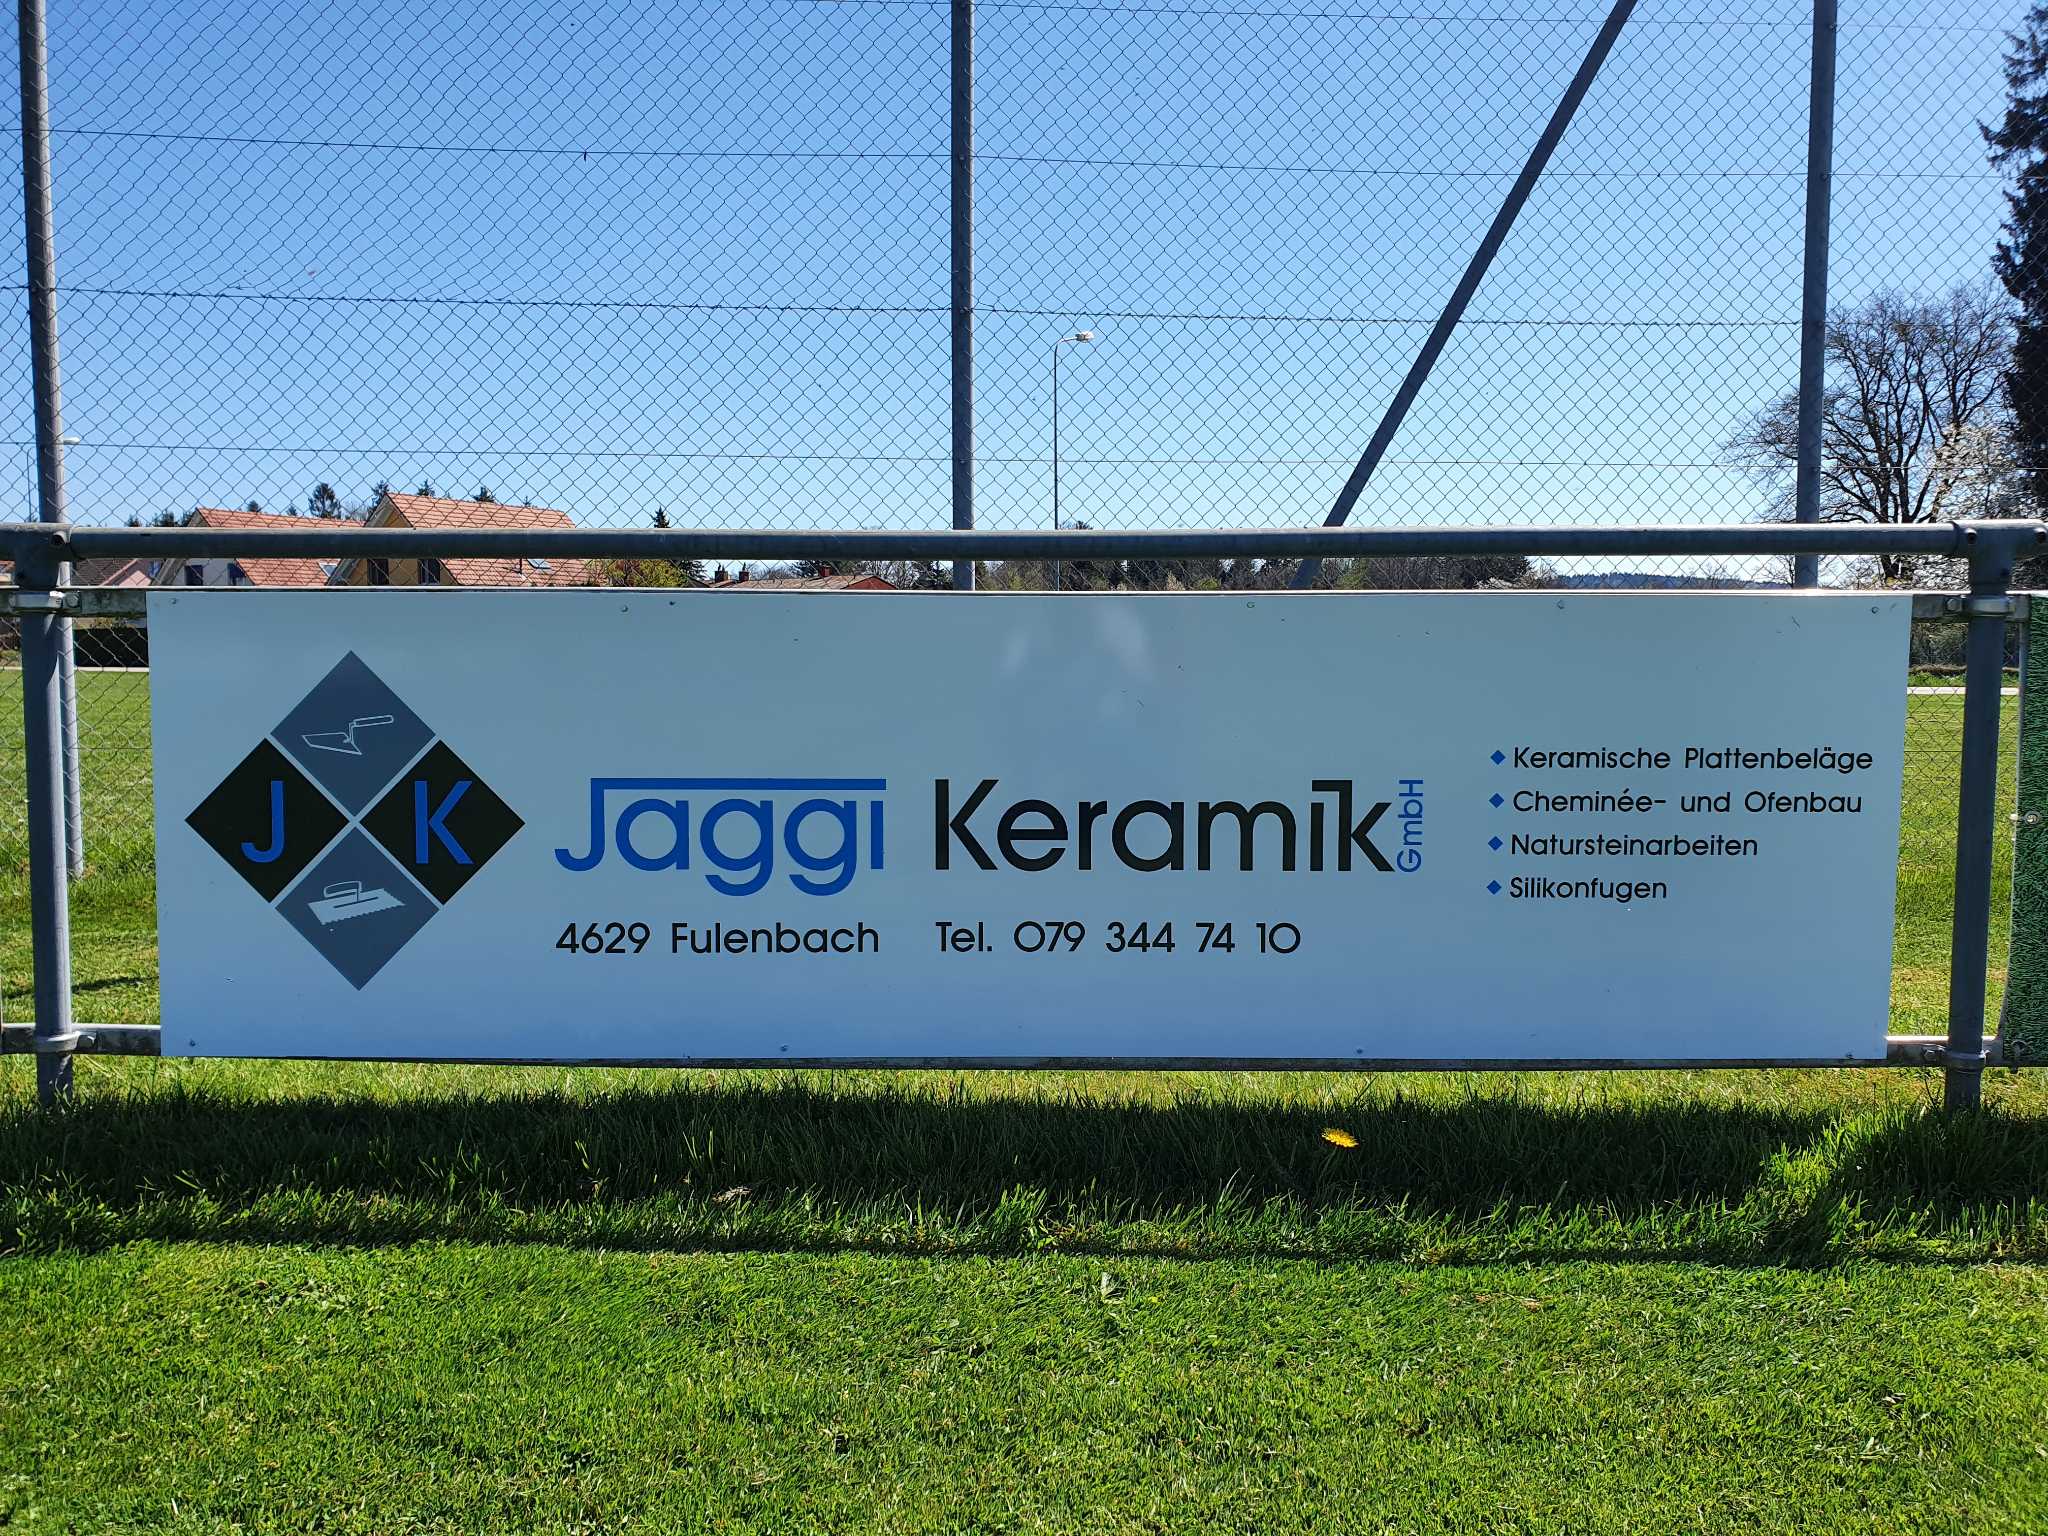 Jäggi Keramik GmbH